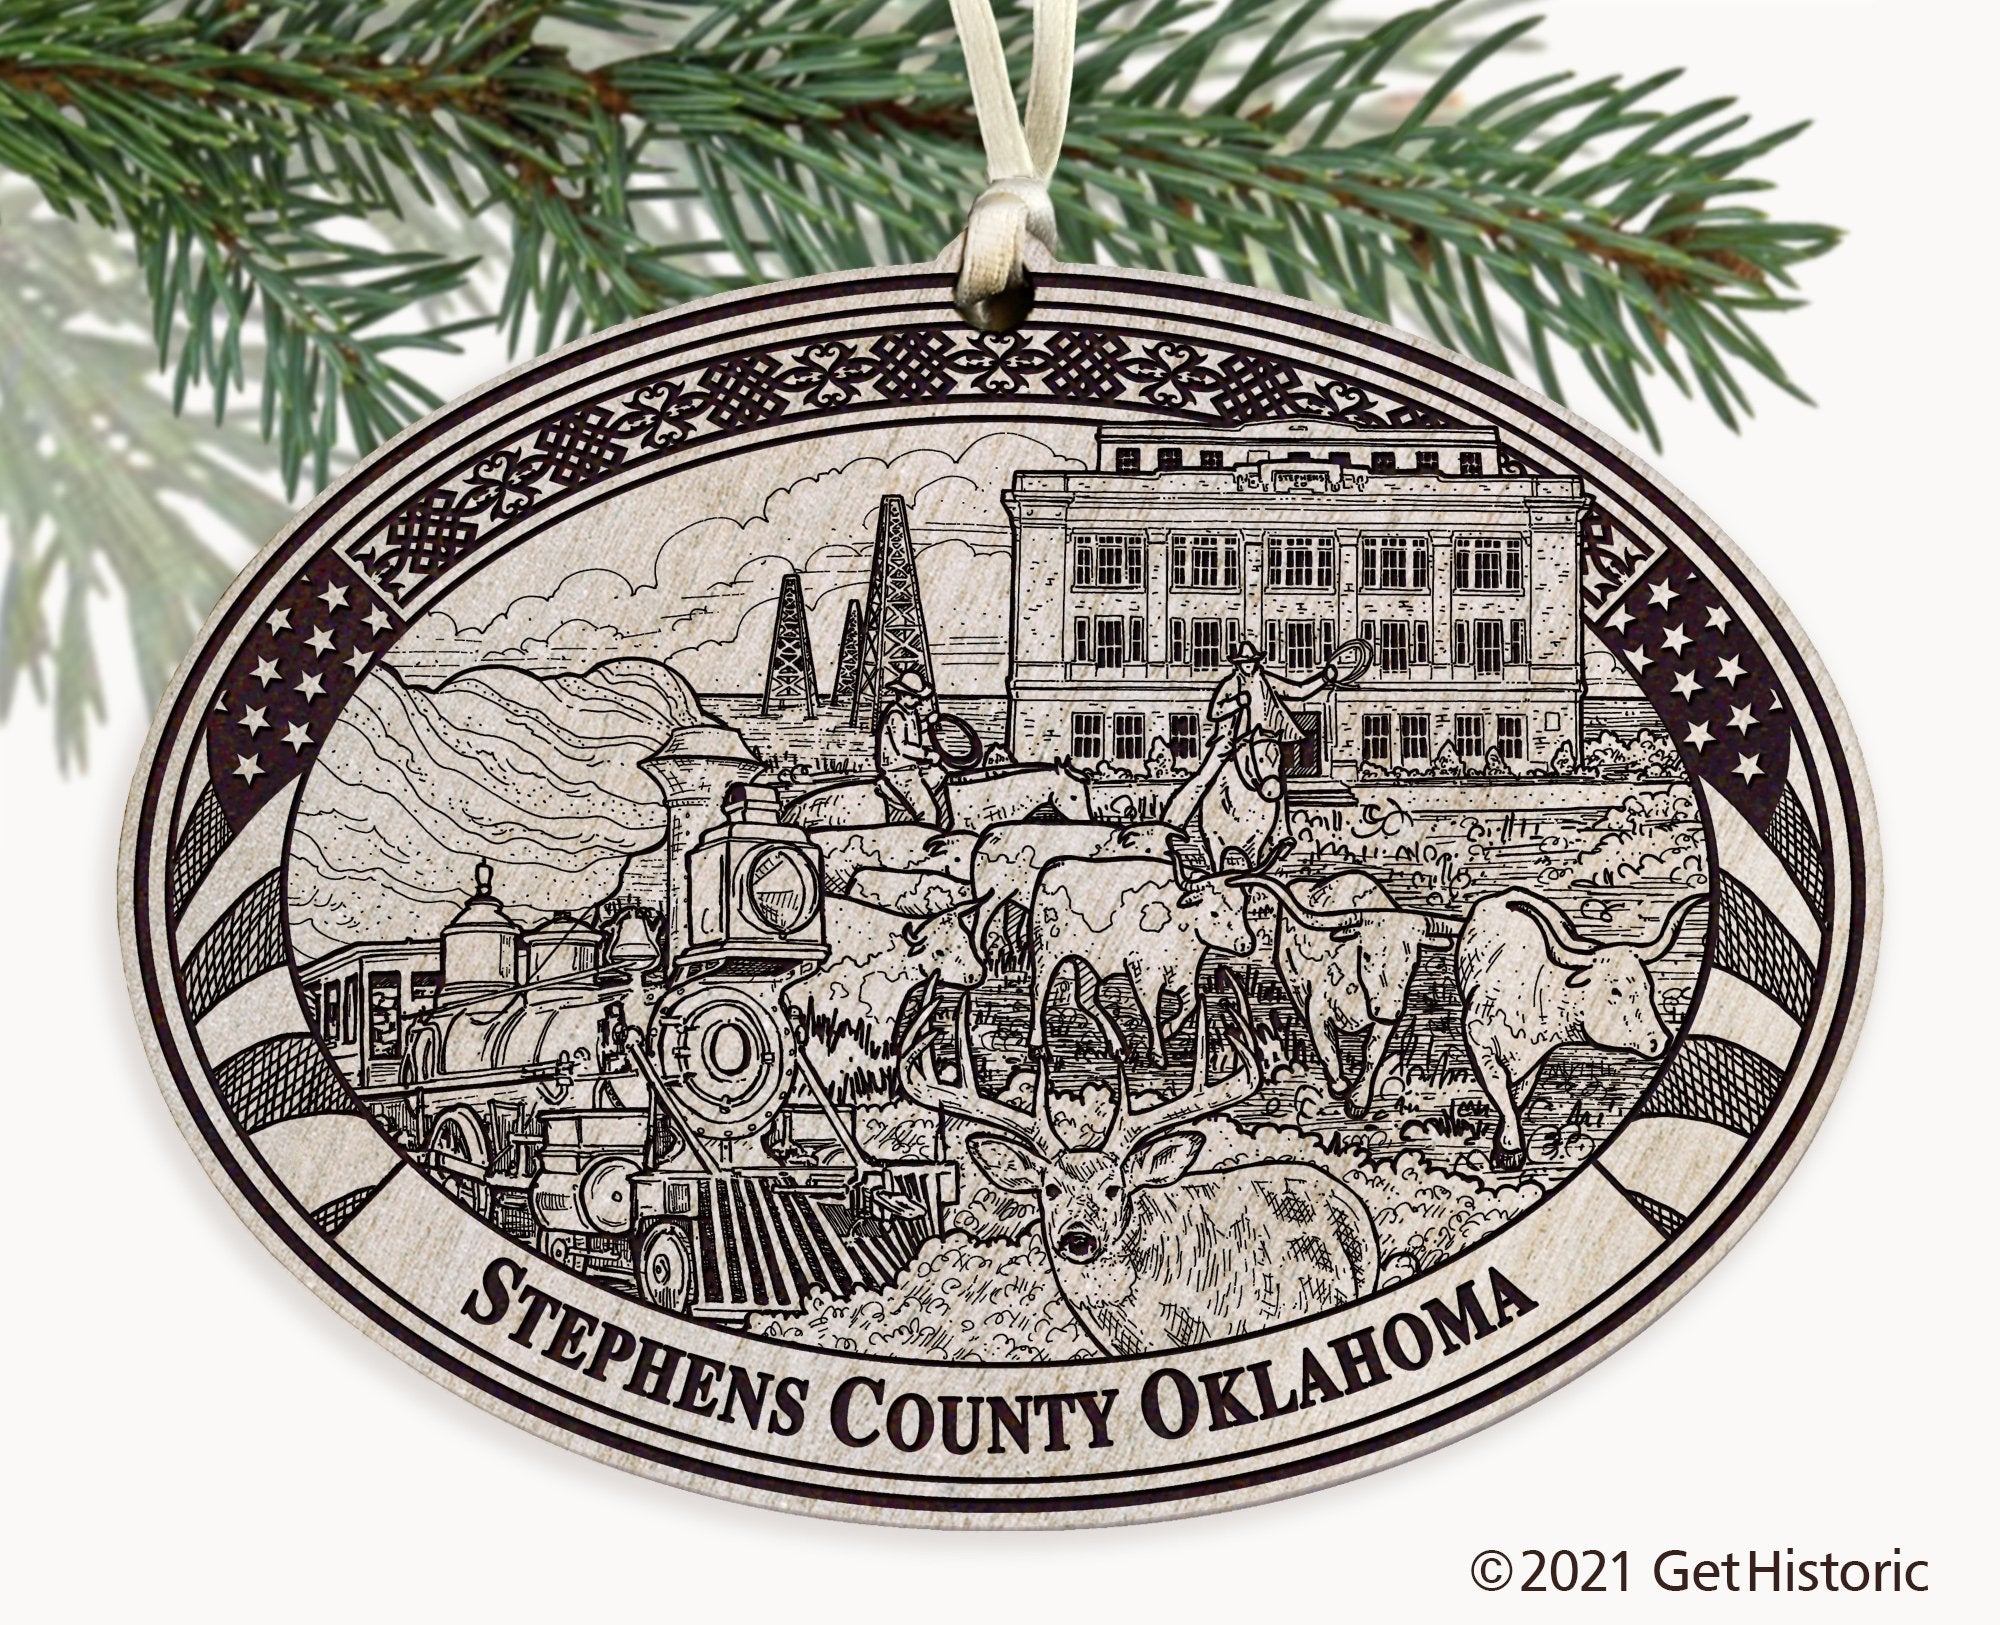 Stephens County Oklahoma Engraved Ornament